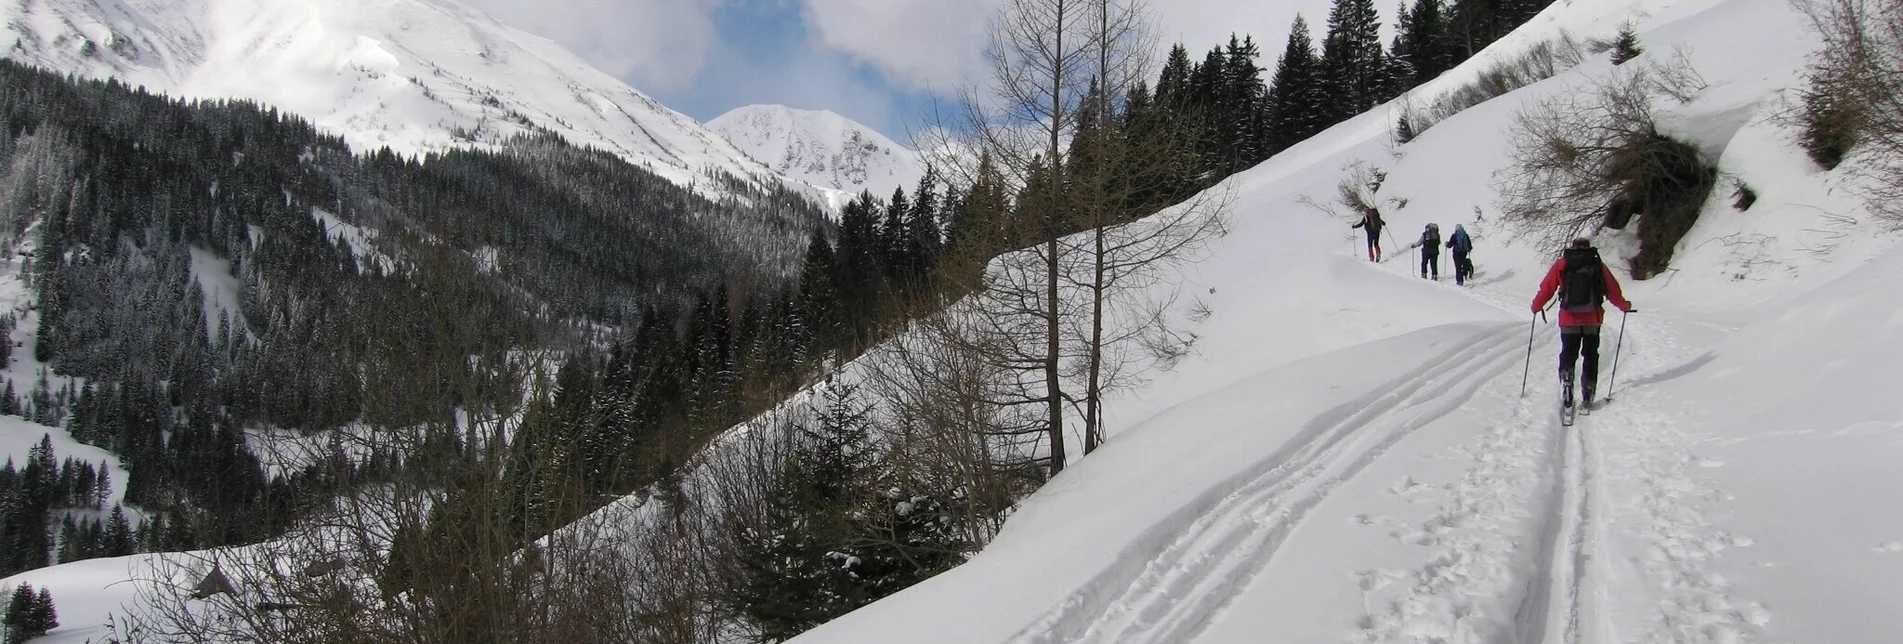 Skitour Seitnerzinken - Touren-Impression #1 | © Erlebnisregion Murtal